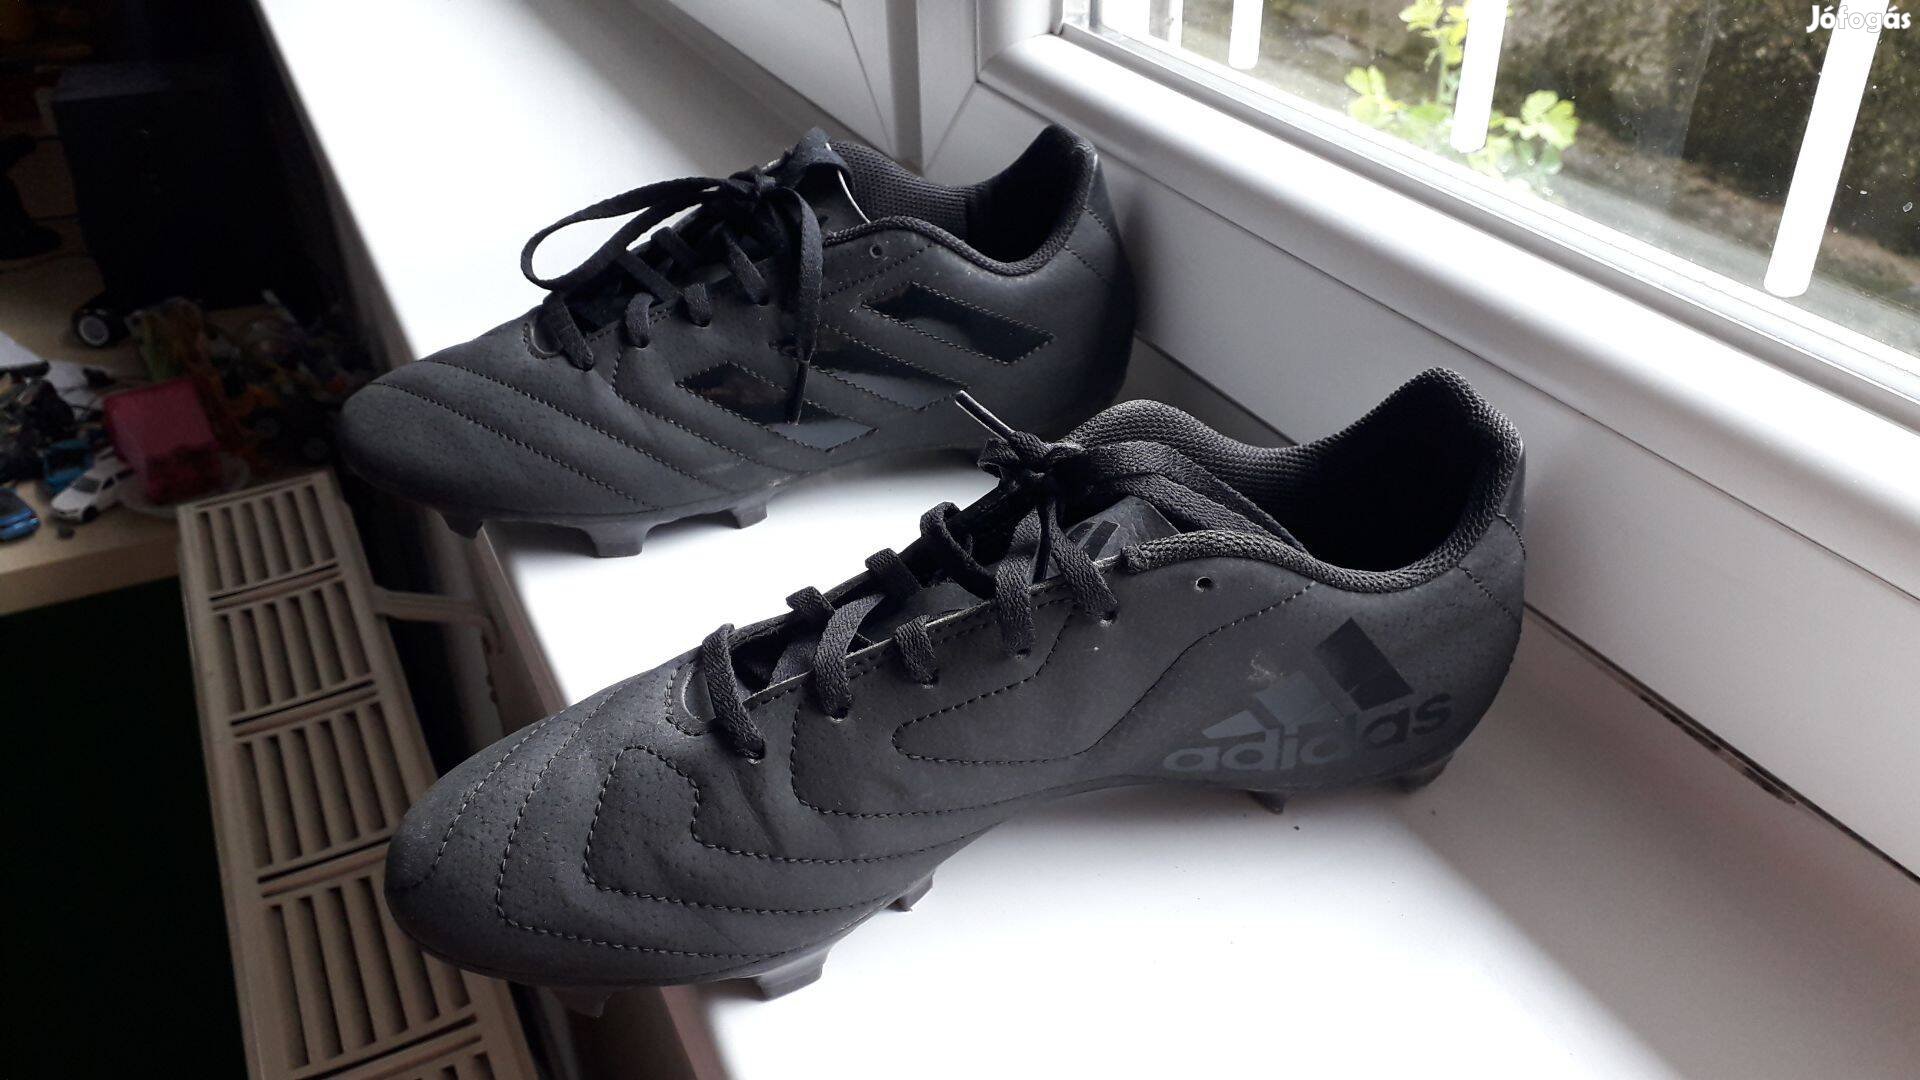 Adidas Goletto FG stoplis cipő fekete, méret: 41+1/3 (angol méret 7,5)